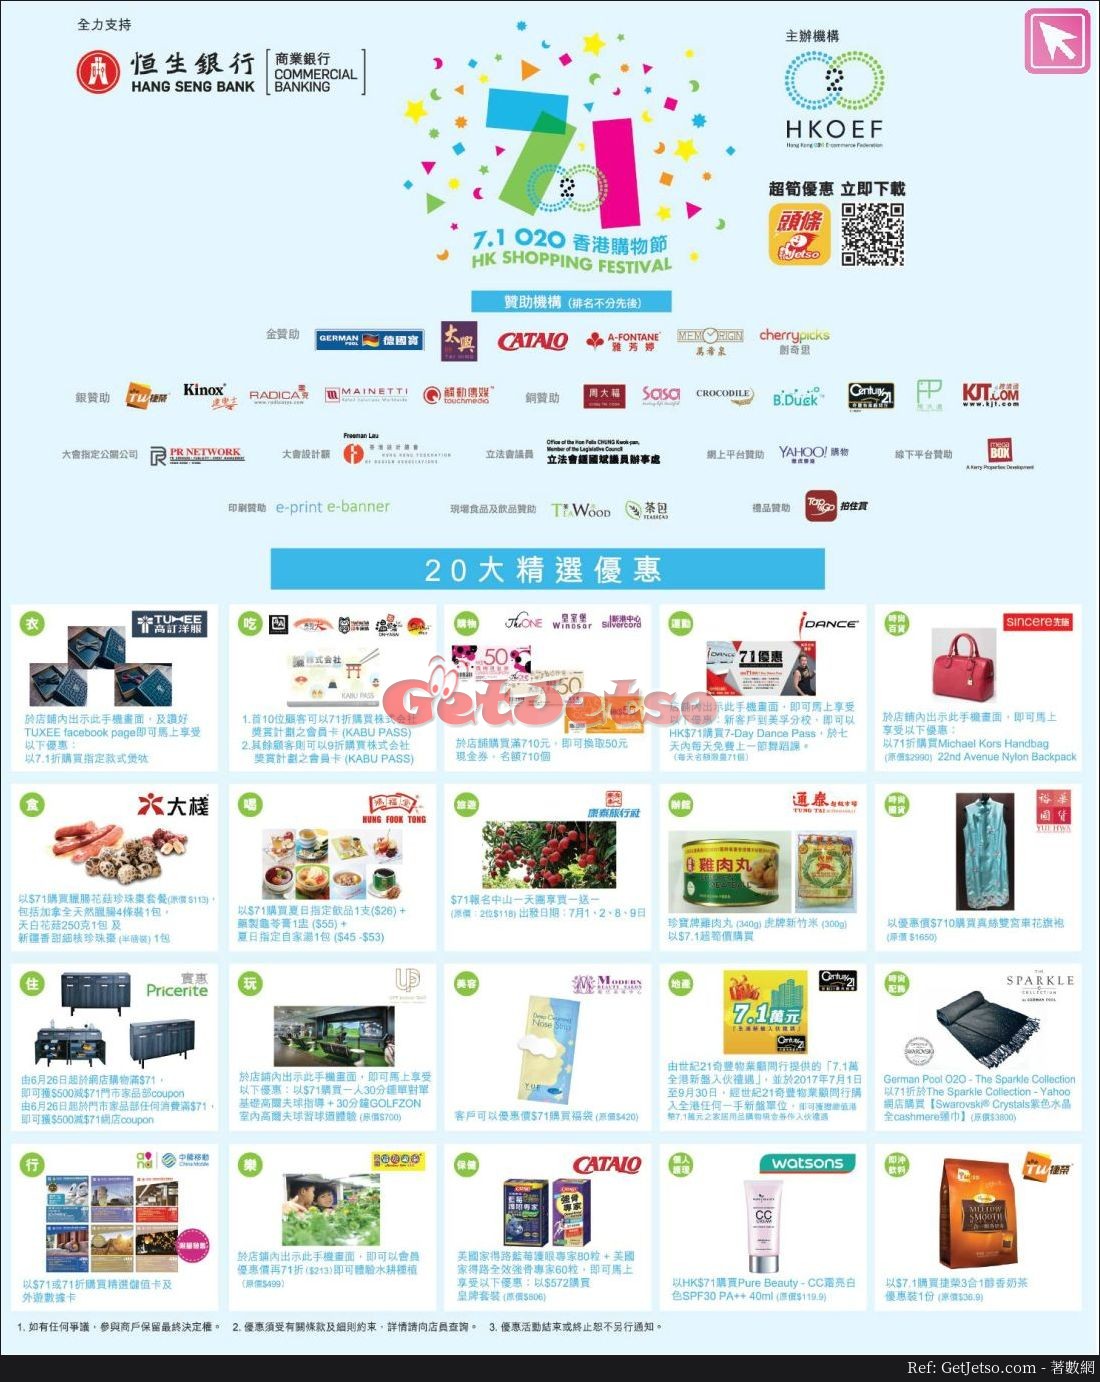 恒生信用卡7.1香港購物節優惠(至17年7月31日)圖片2